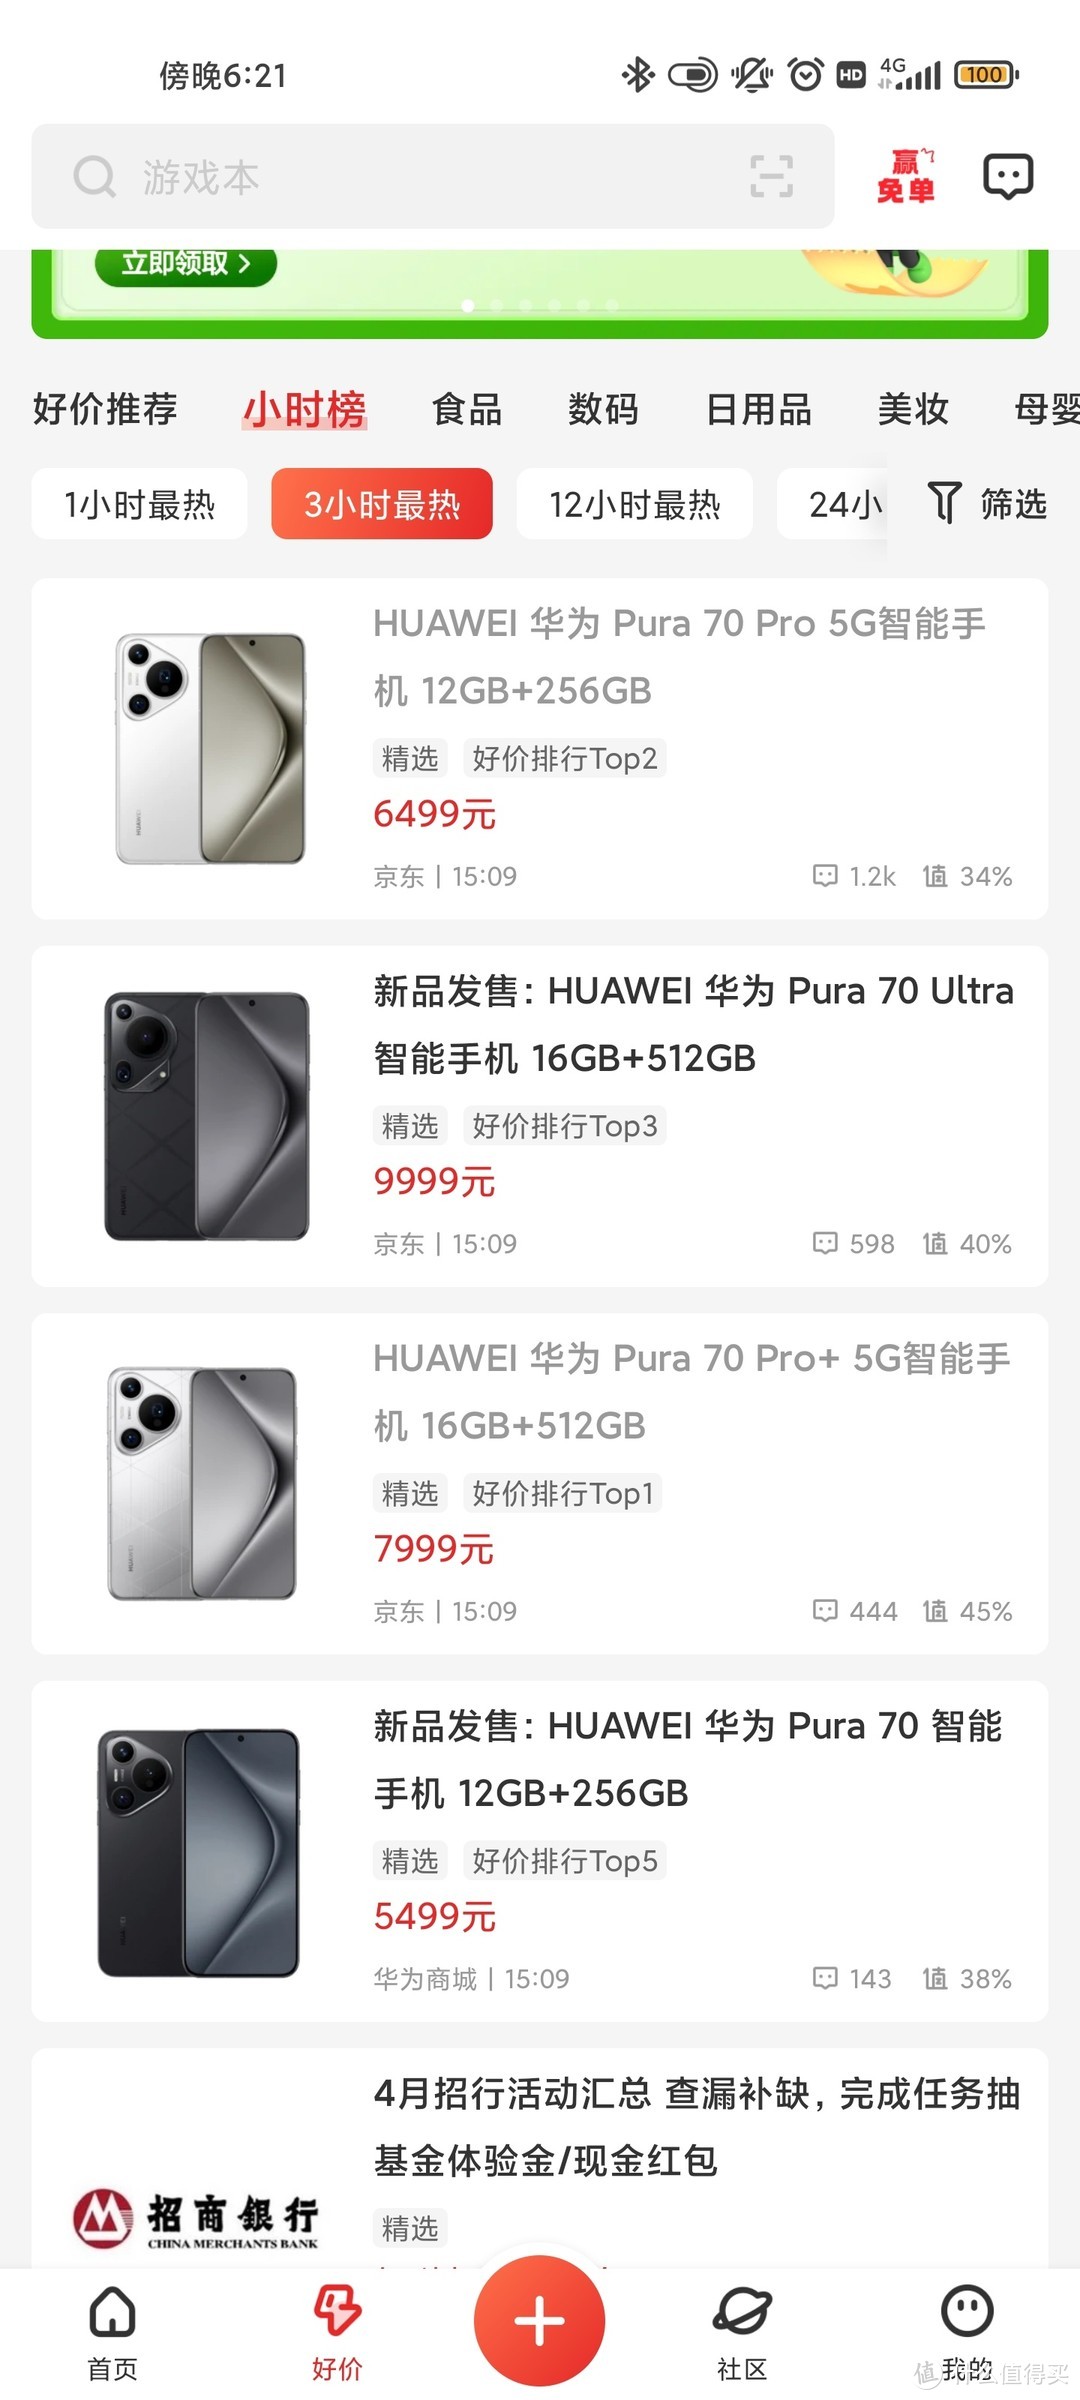 [啥情况啊???]HUAWEI 华为 Pura 70 Pro 5G智能手机 